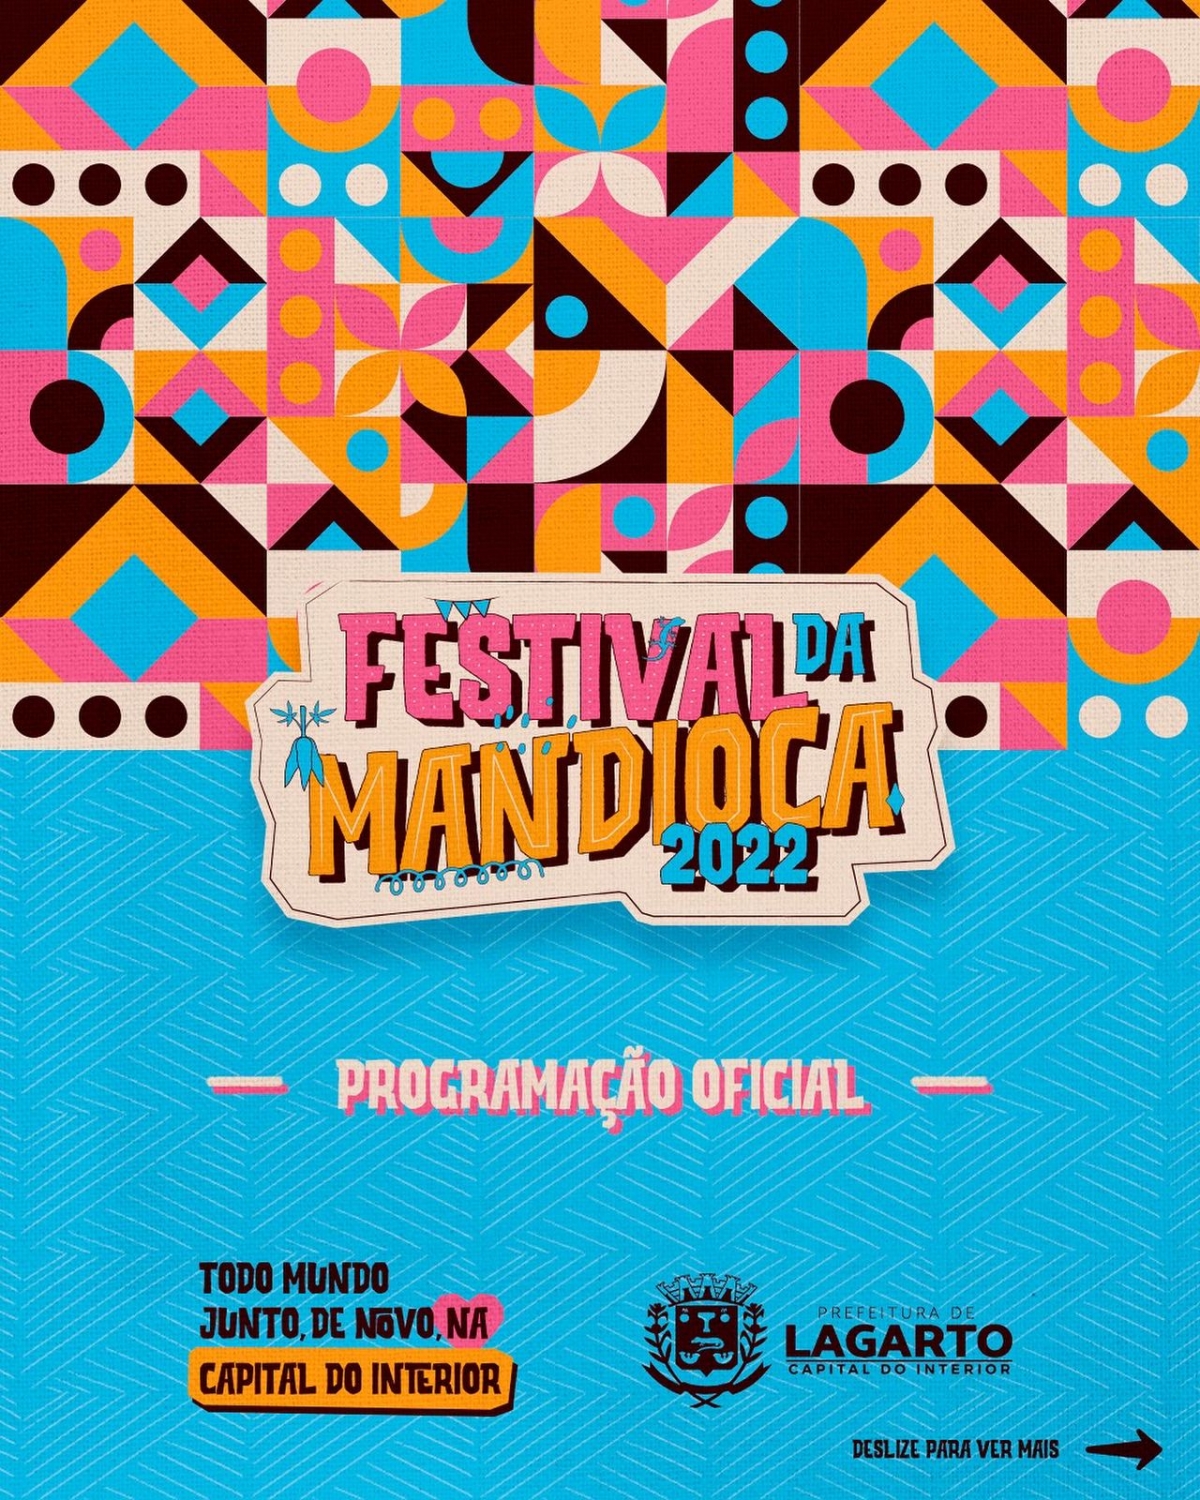 Prepare a "roupa de ir"! Prefeitura de Lagarto apresenta a Programação Oficial do Festival da Mandioca 2022 - Imagem: Divulgação | Prefeitura de Lagarto